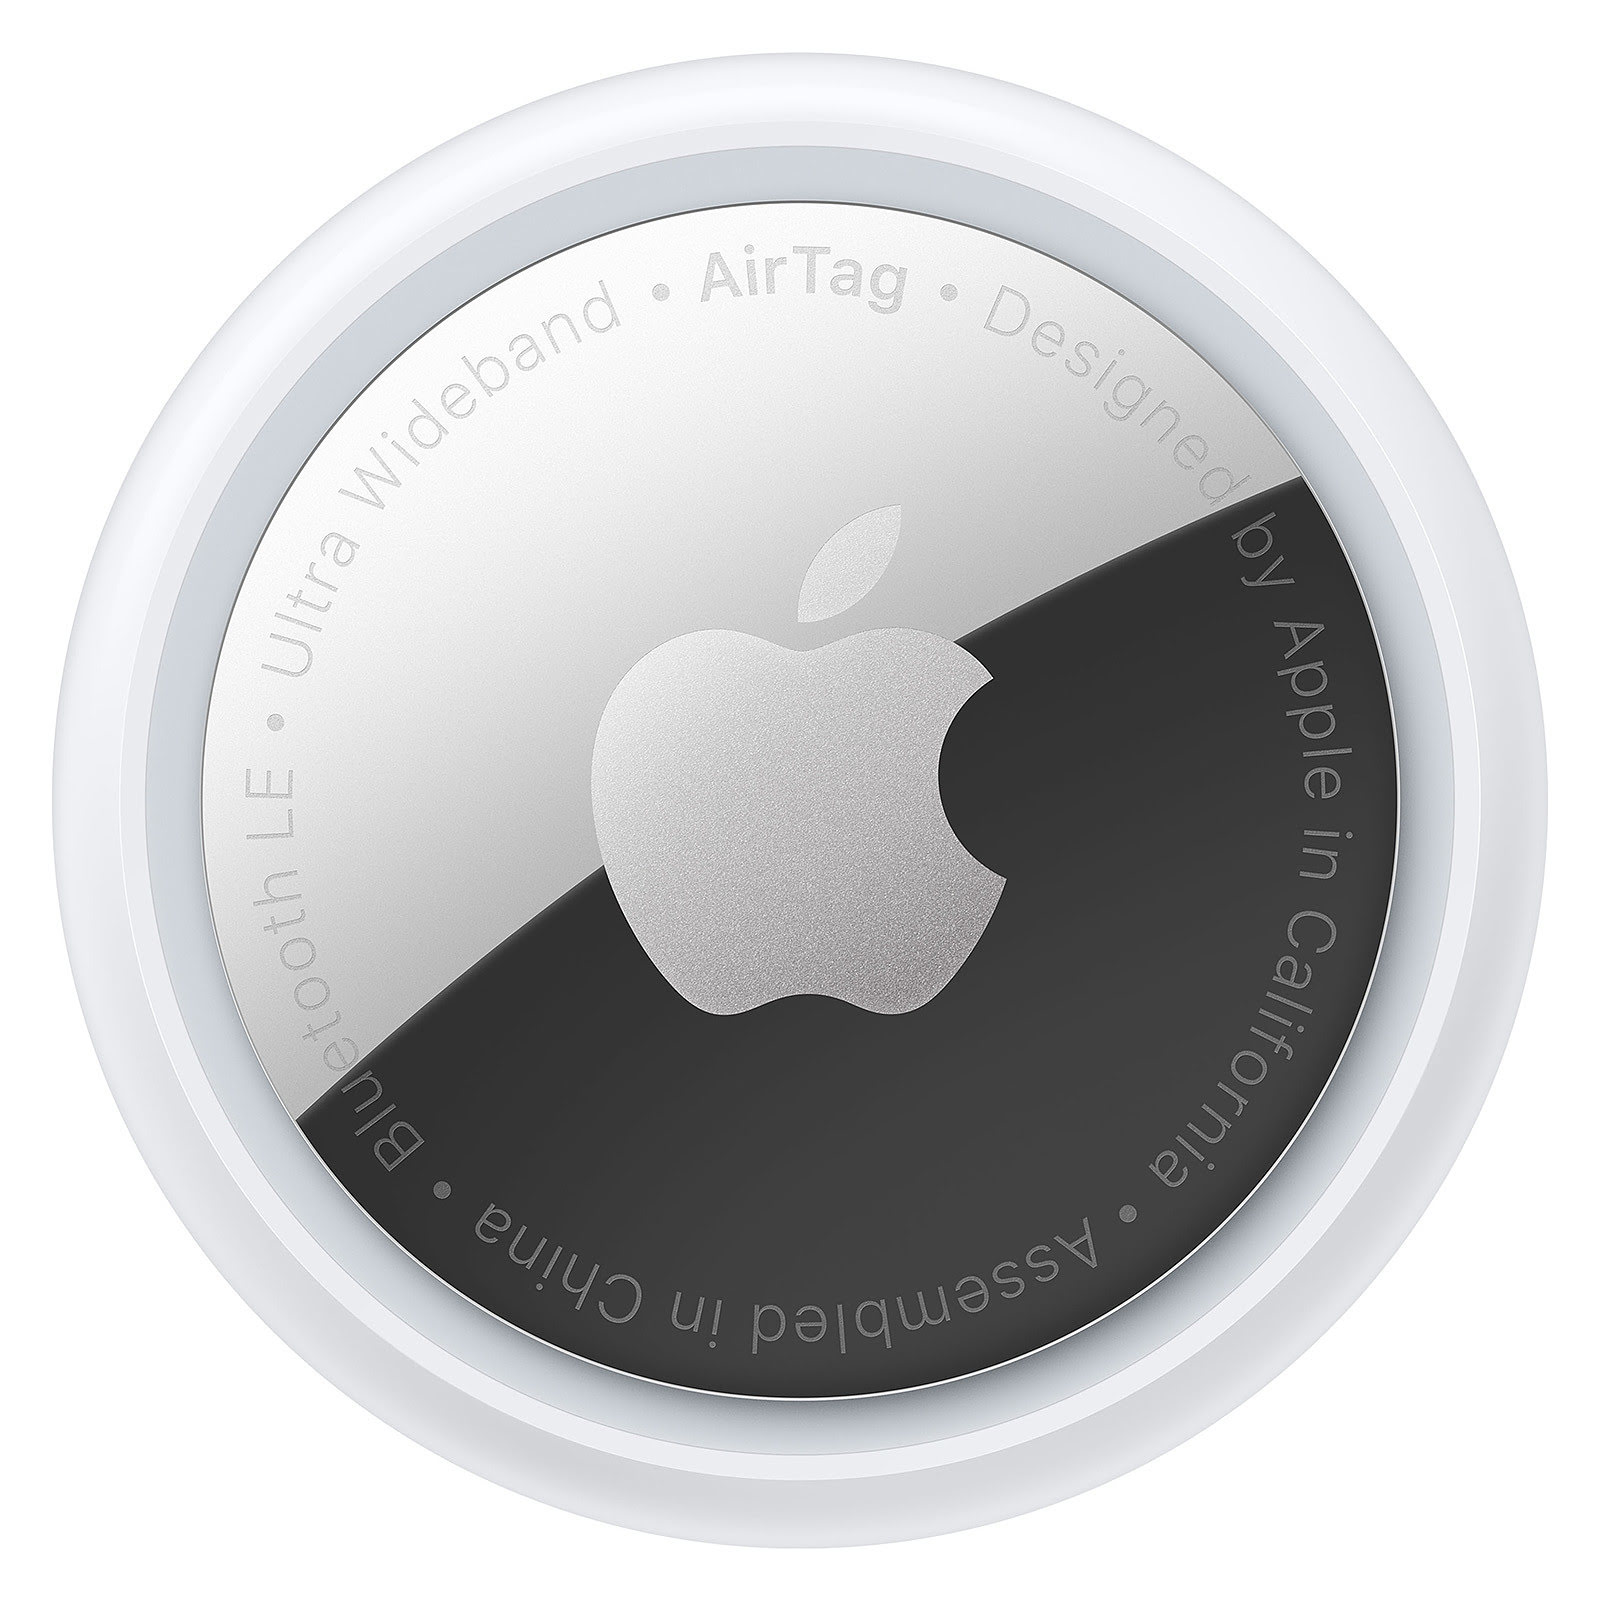 Tracker connecté Apple AirTag (Pack de 1) - Accessoire téléphonie Apple - 0